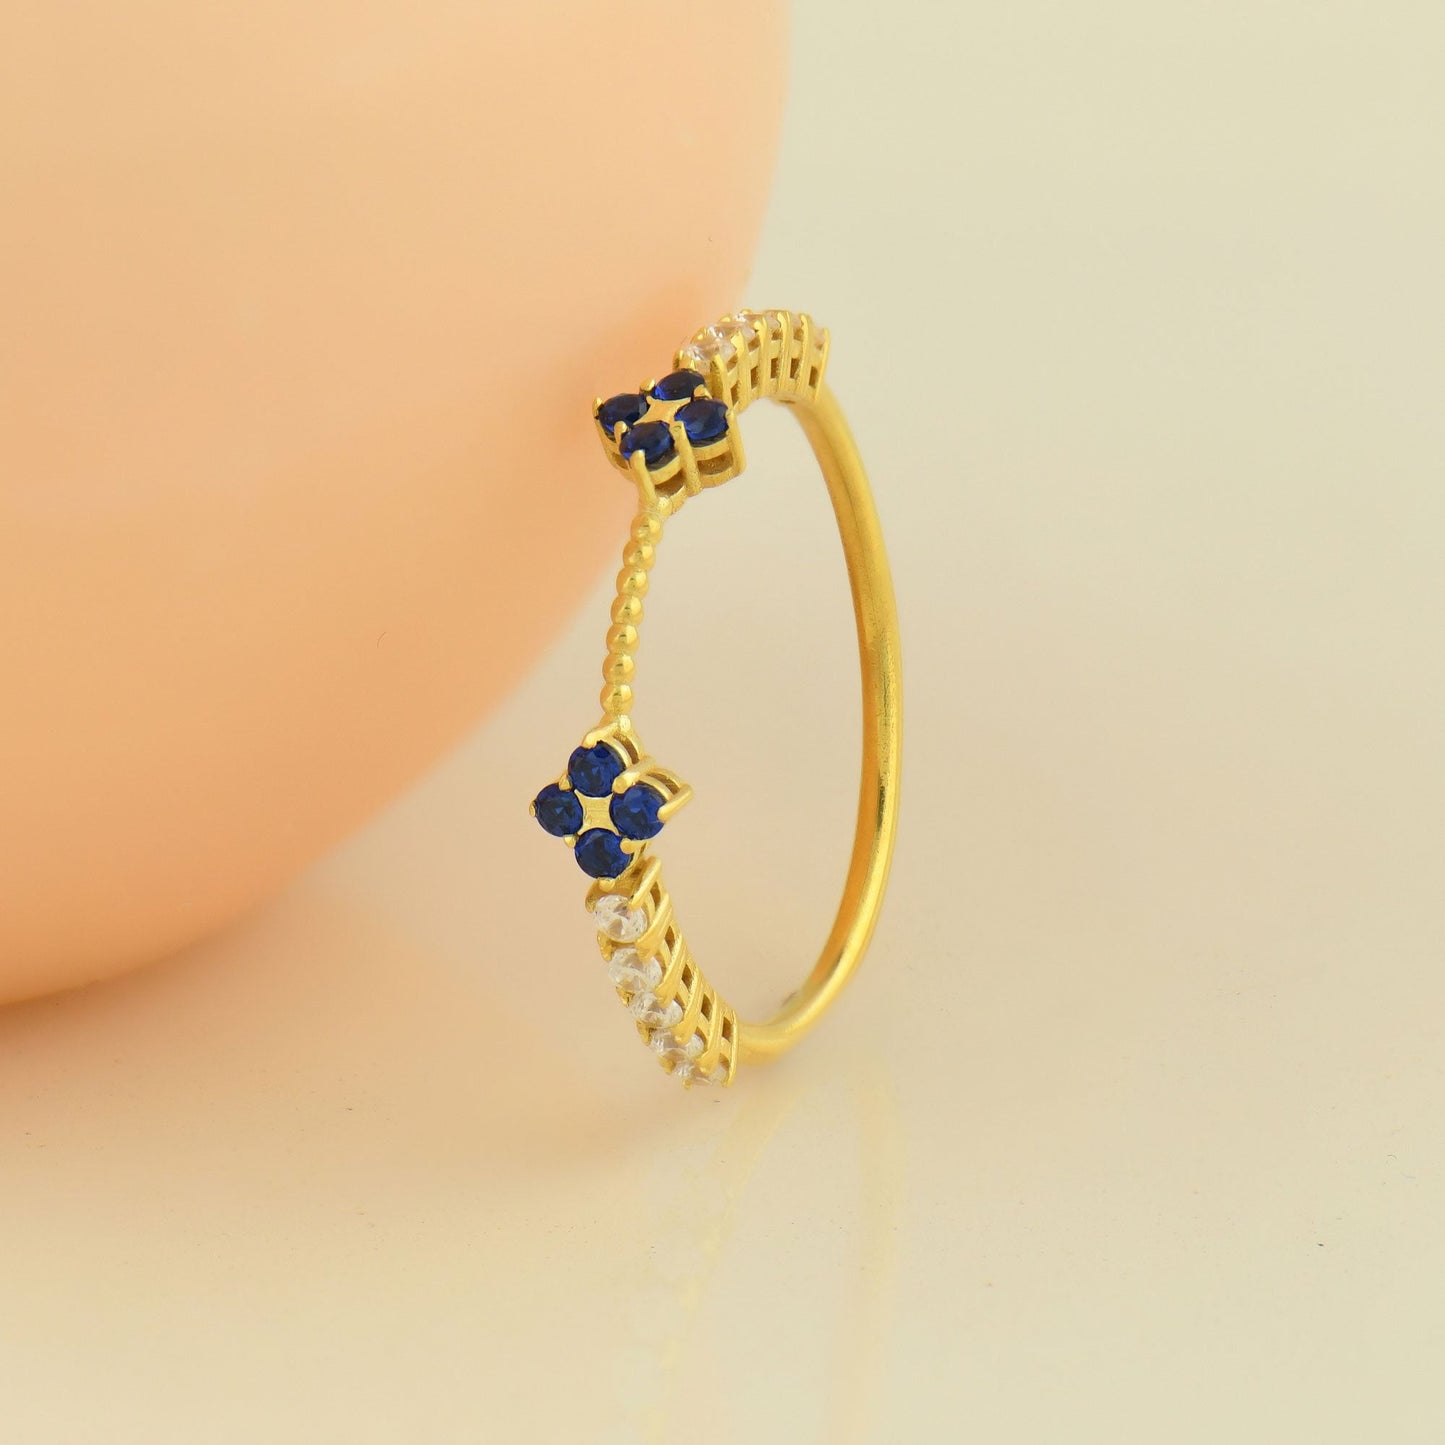 10K Gold Unique Sapphire Ring - 2S176SAF